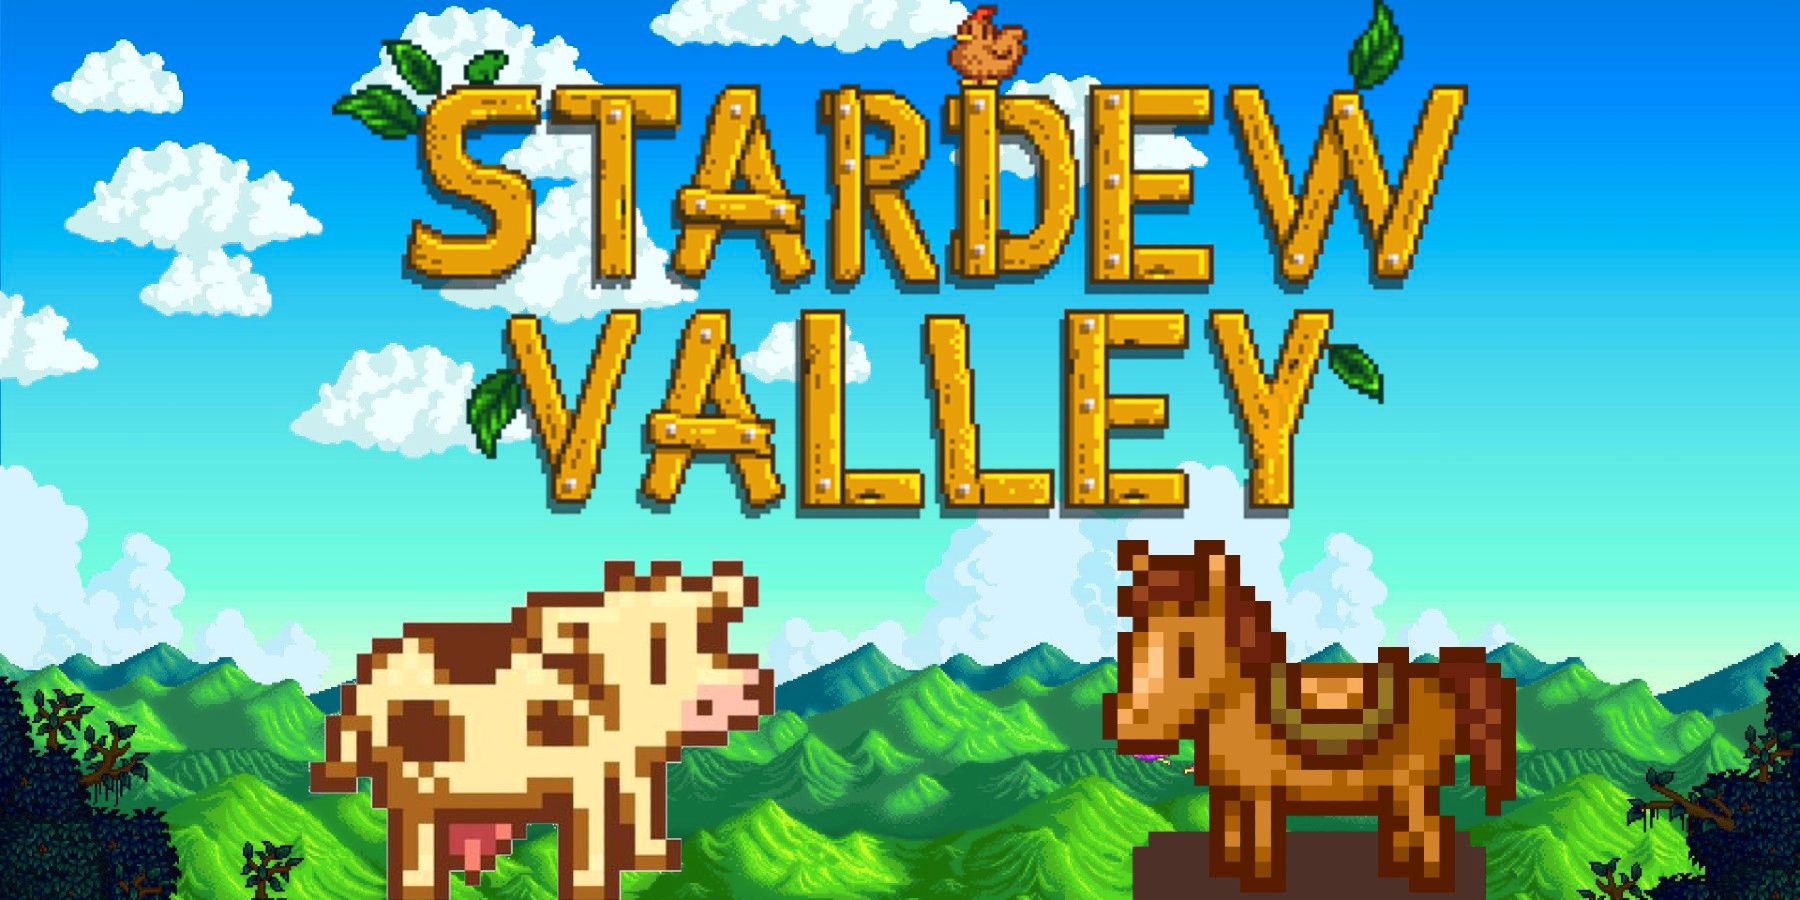 Sundt Stardew Valley-klip viser, at spilleren ‘bevogter’ kvæg